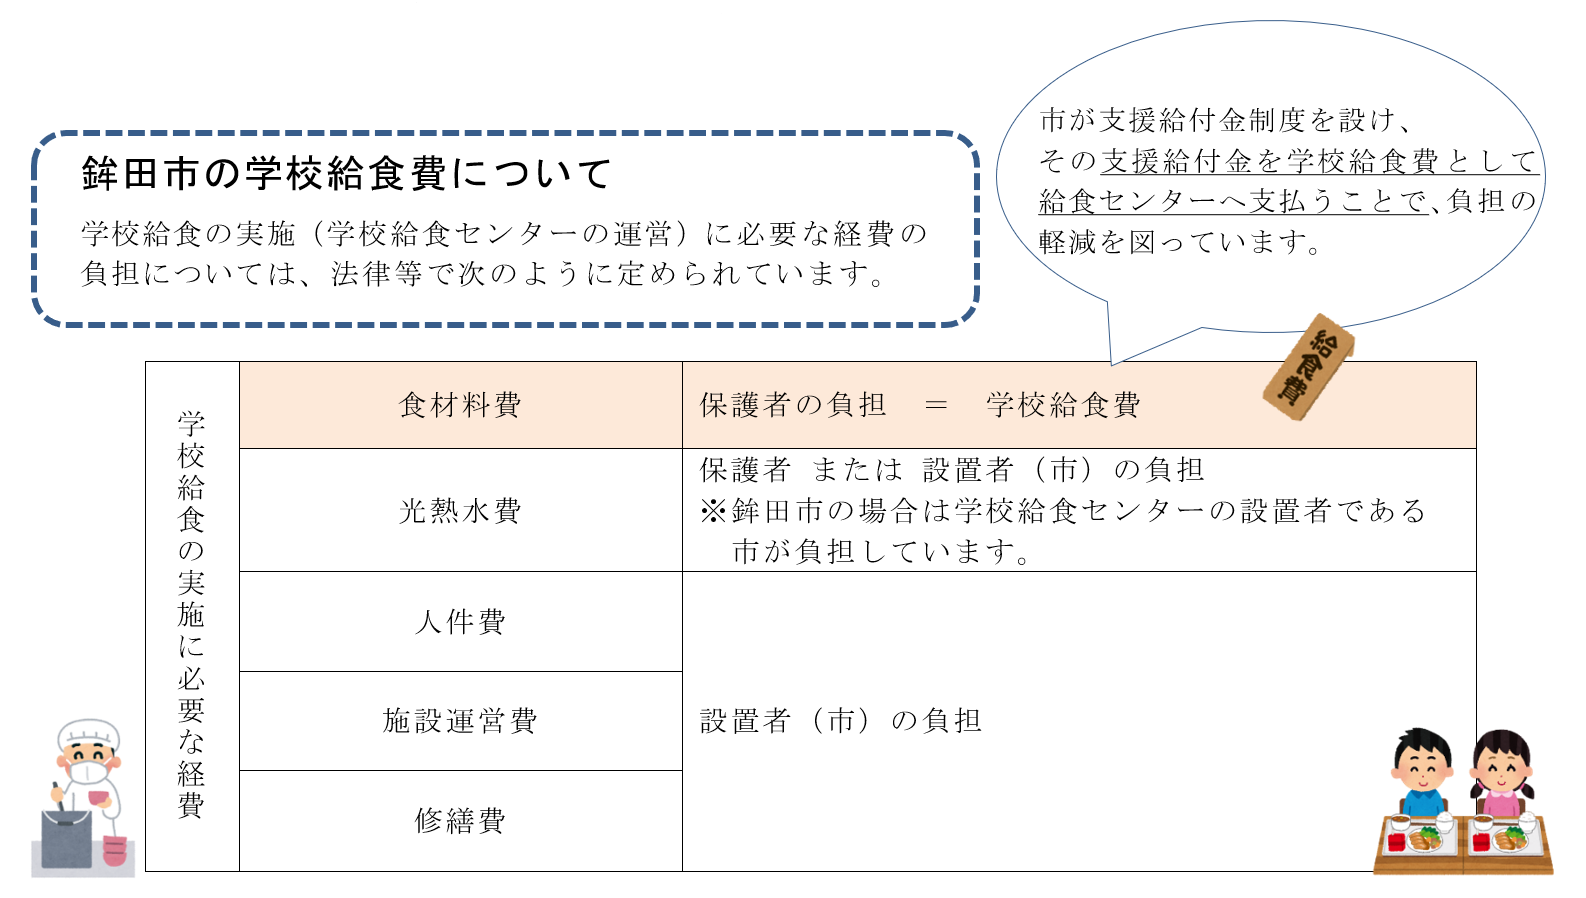 鉾田市の学校給食費について　イメージ図